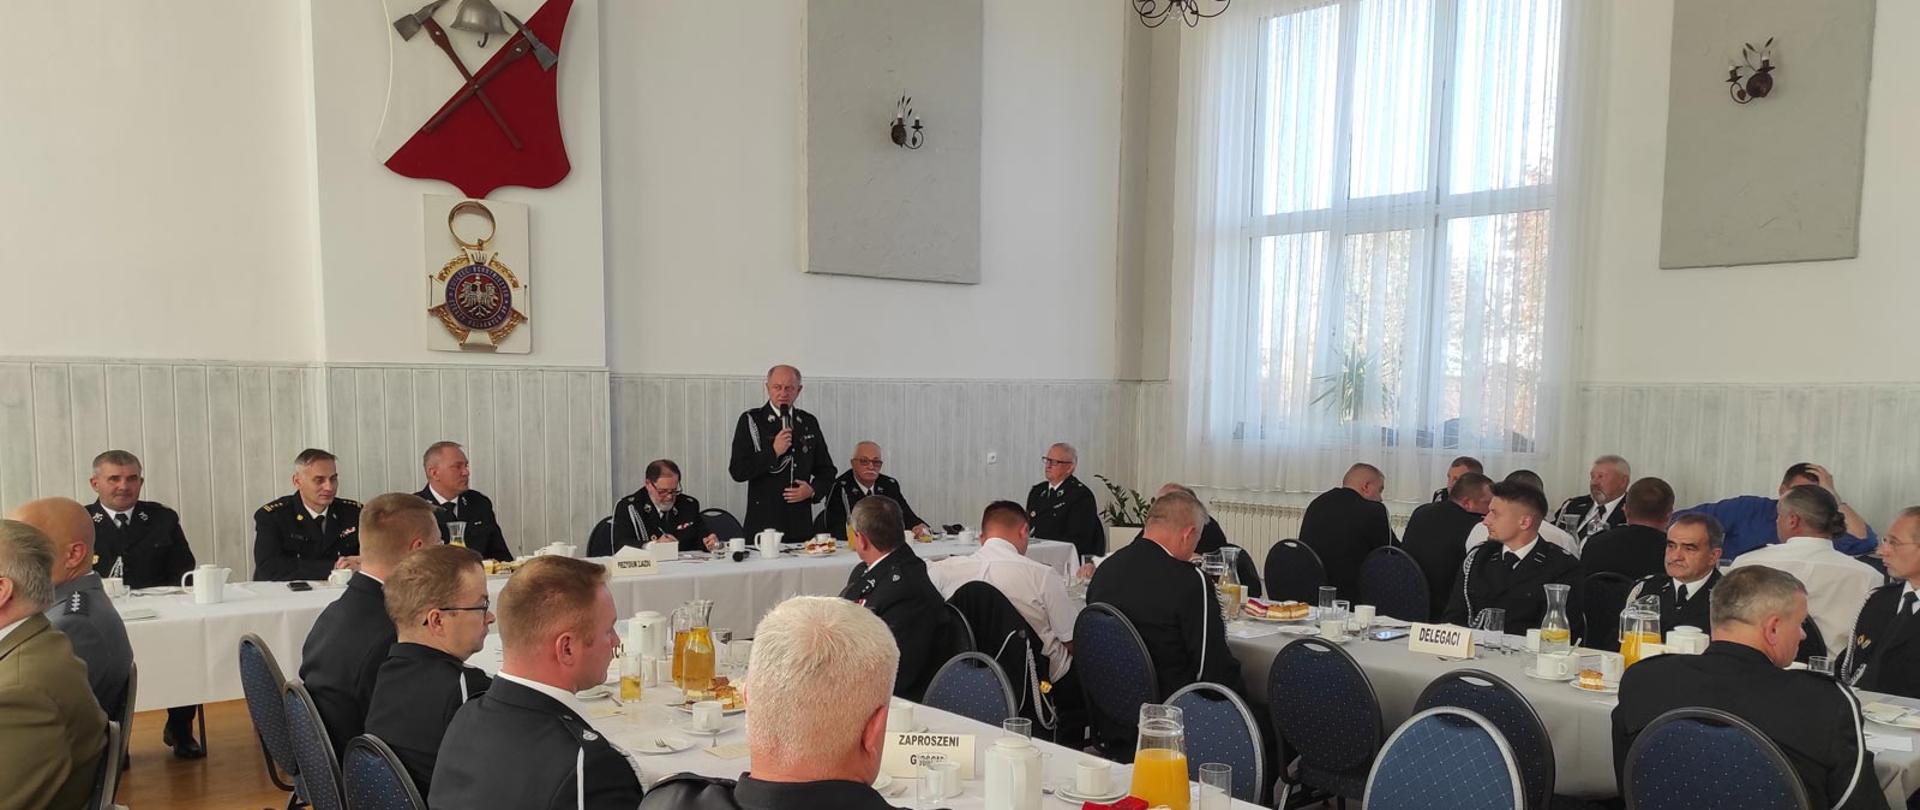 Zjazd Oddziału Gminnego Związku Ochotniczych Straży Pożarnej RP w Koszęcinie. Prezydium zjazdu siedzące za stołem oraz strażacy siedzący przy stołach.
